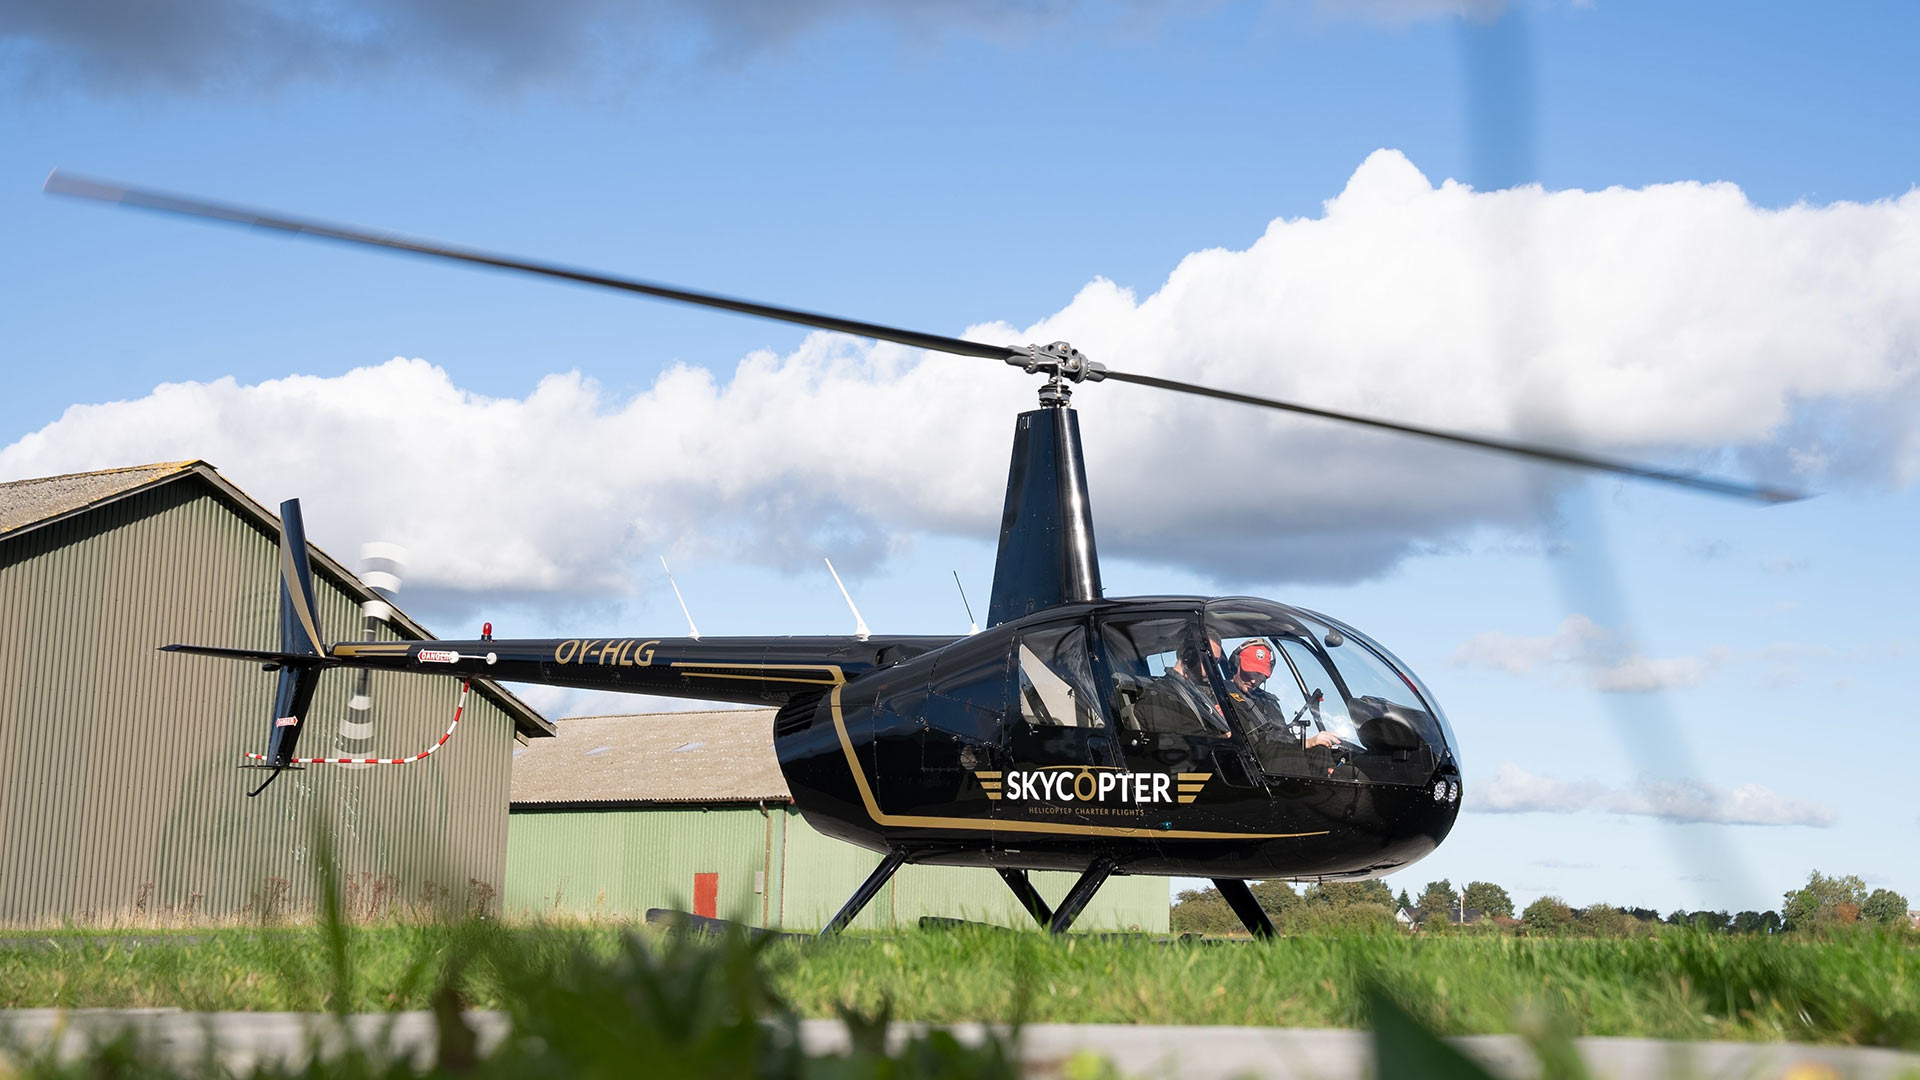 Helikoptergavekort SkyCopter